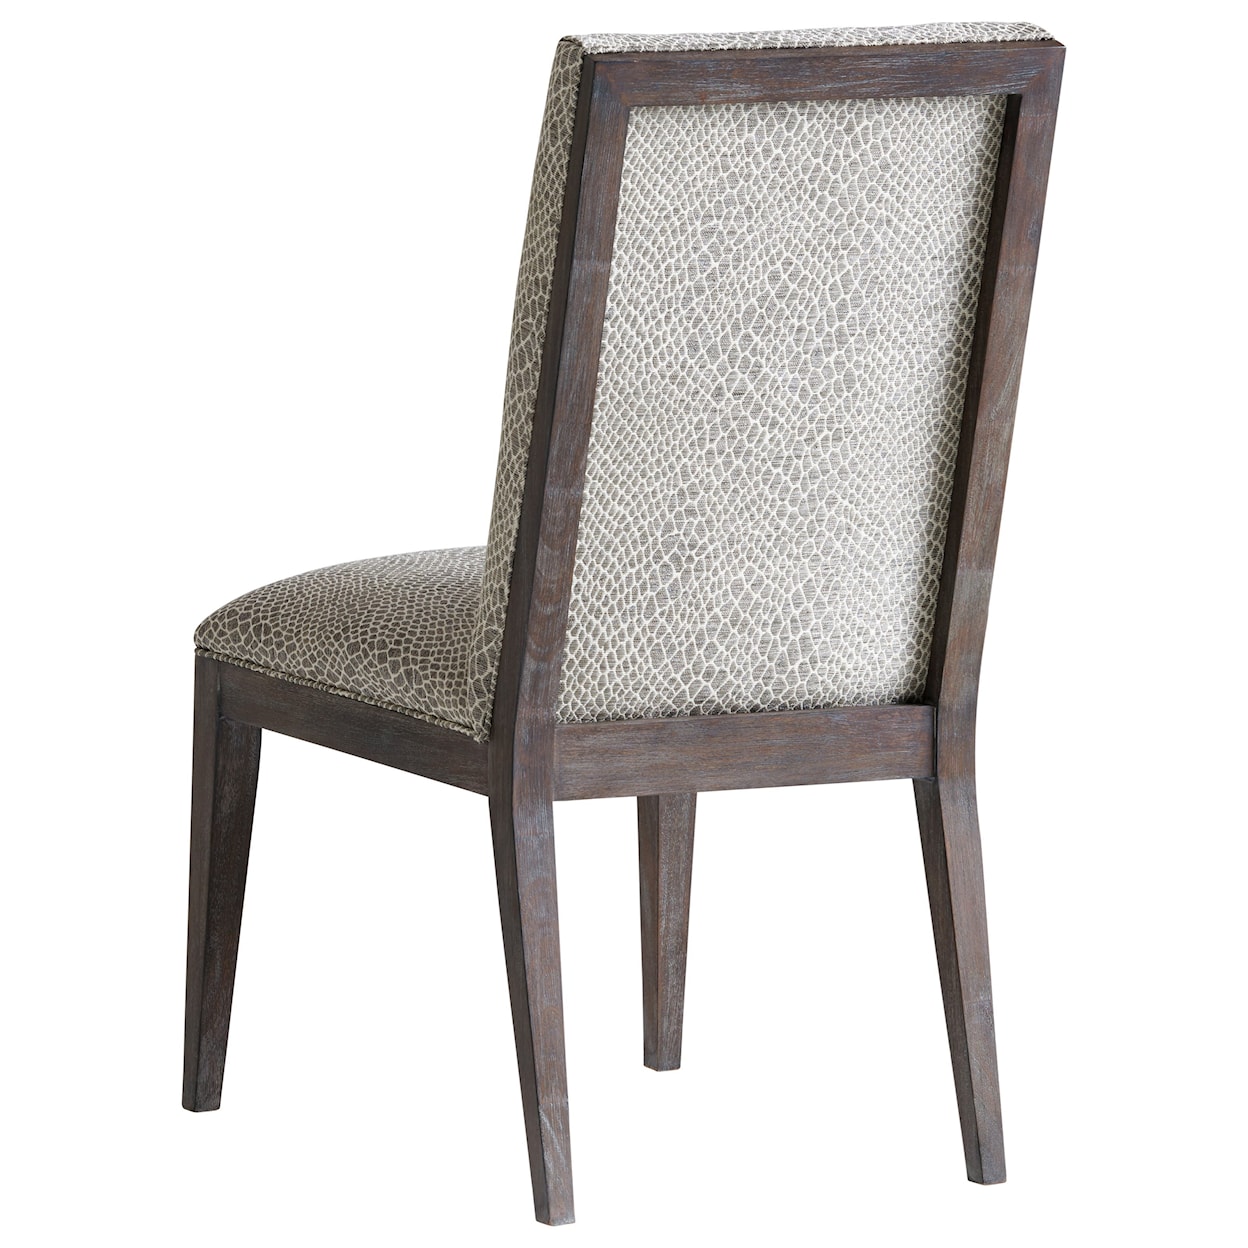 Lexington Santana Bodega Upholstered Side Chair